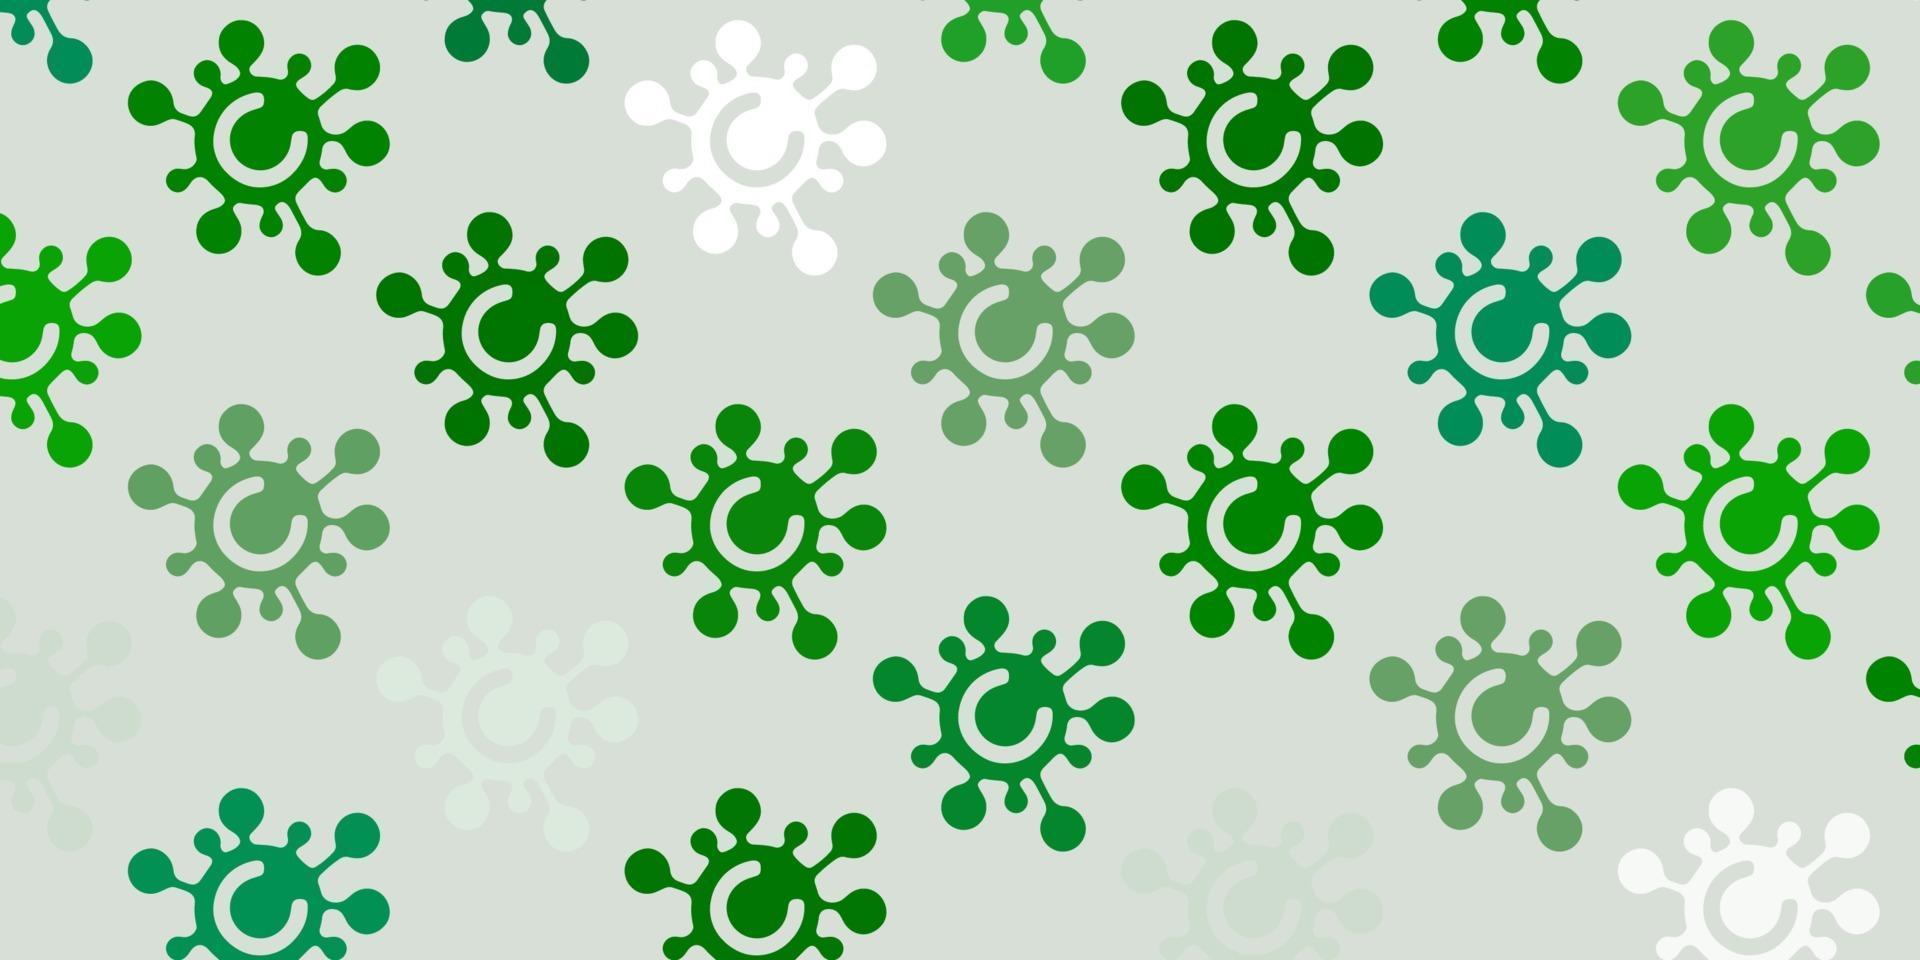 textura de vector verde claro con símbolos de enfermedades.